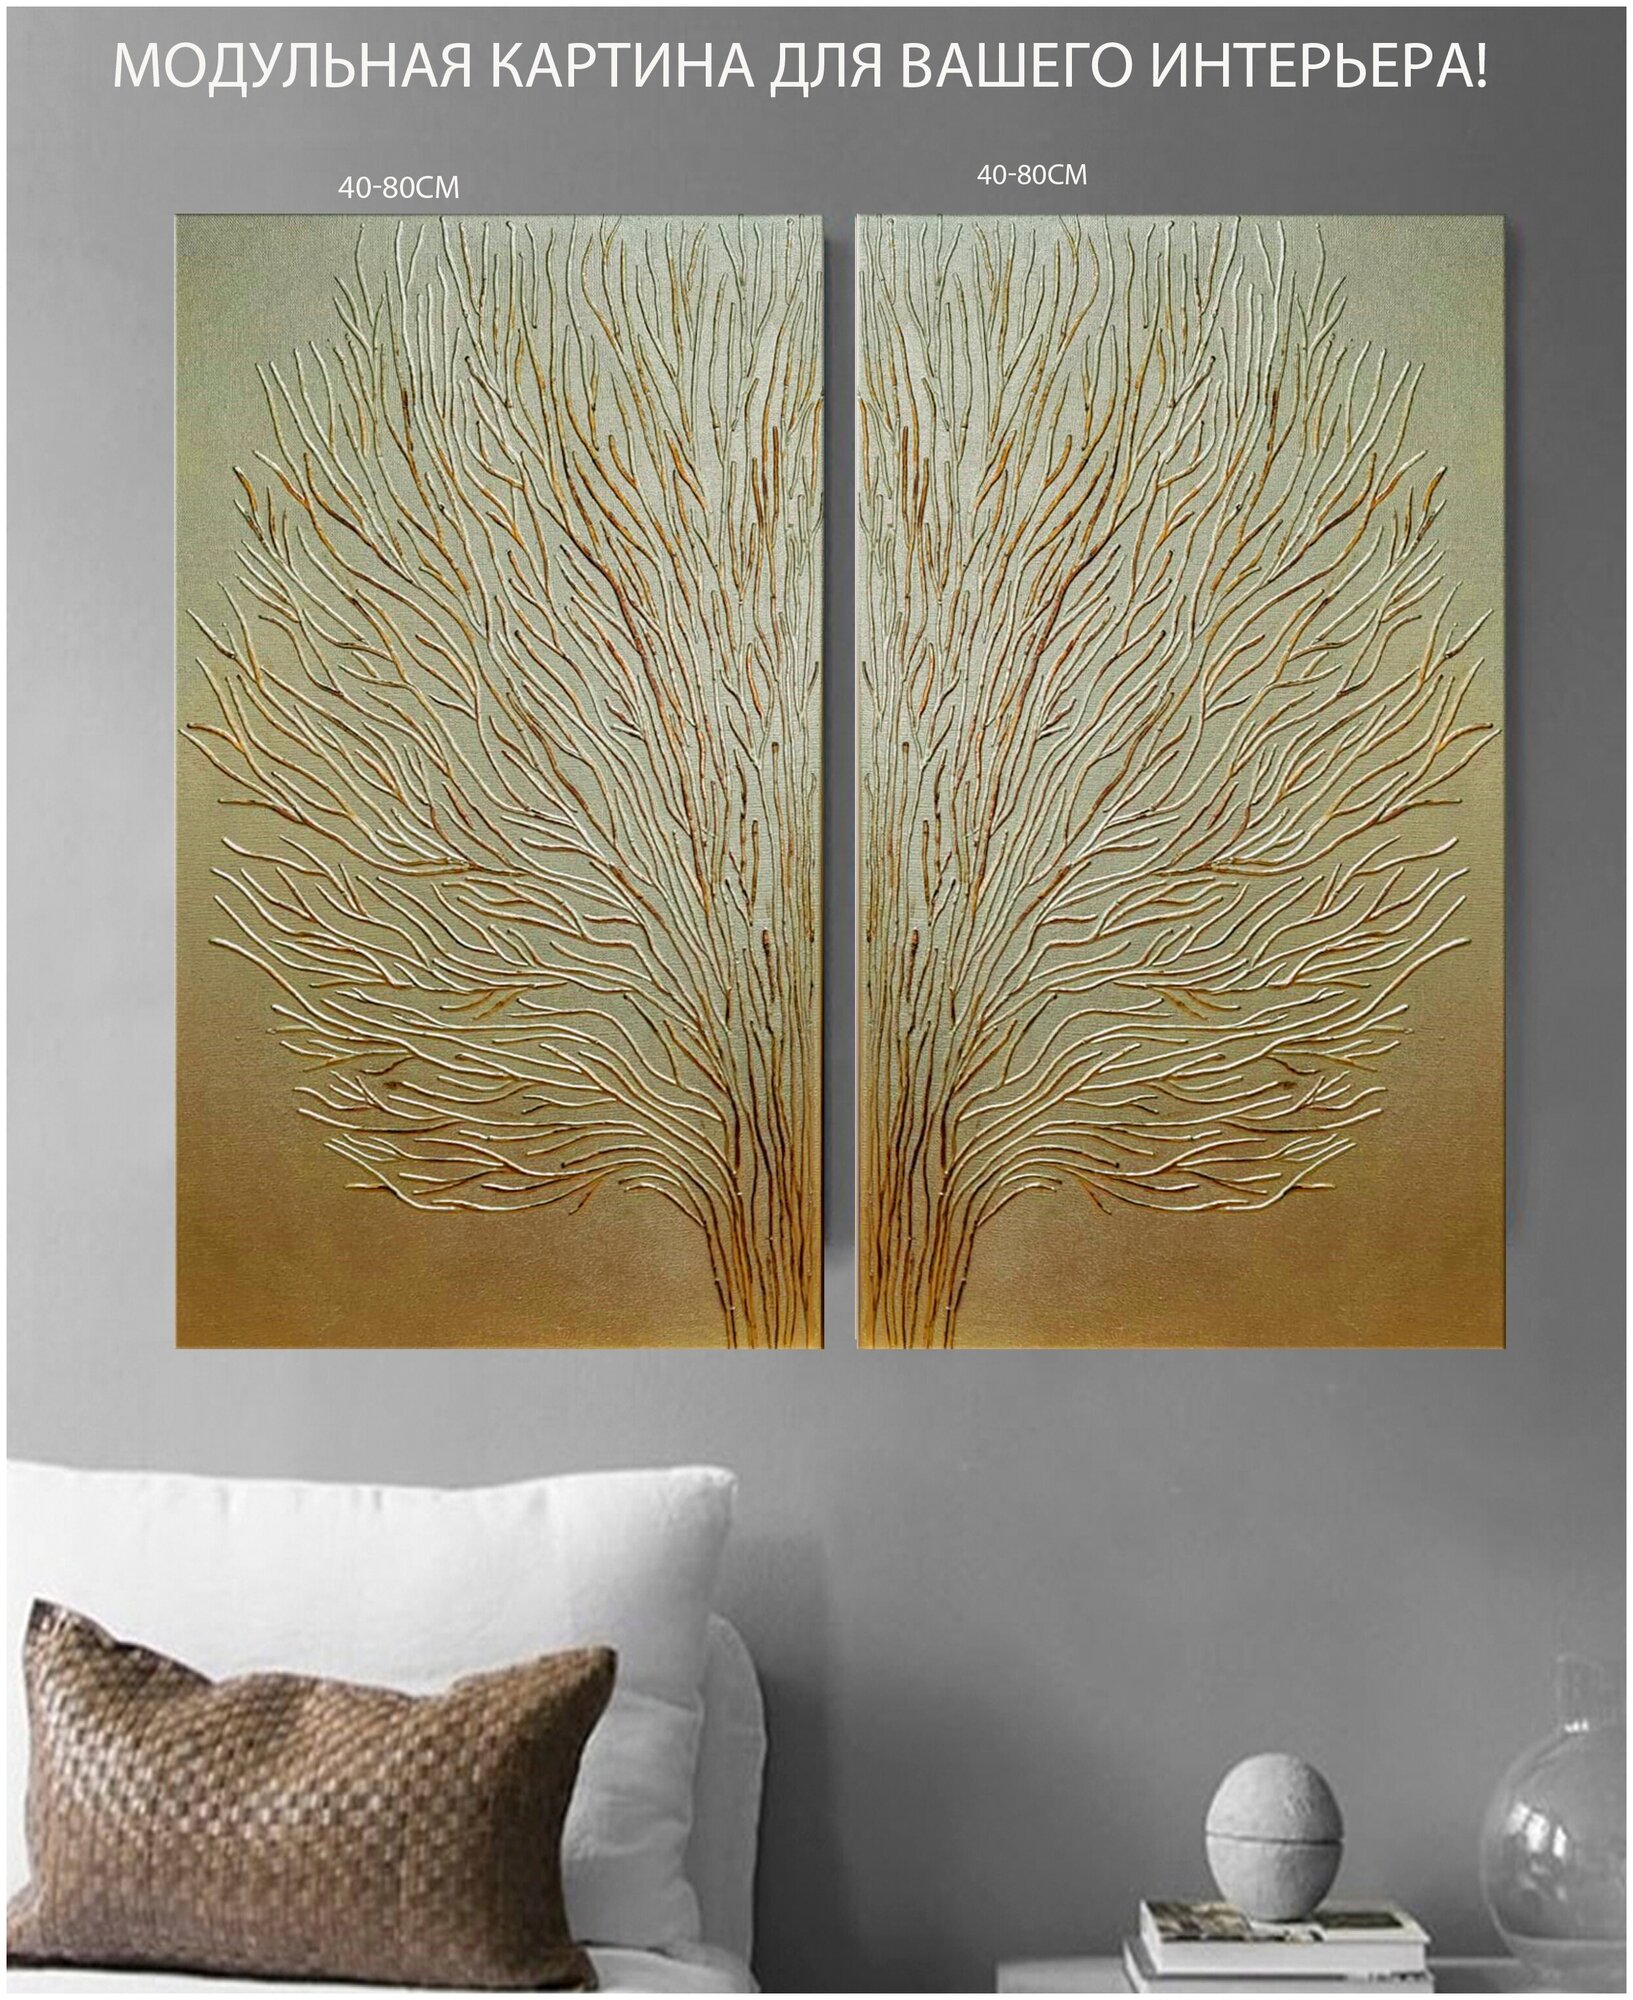 Картина на холсте/Модульная золотая картина на холсте"Модульное дерево"40-80см-2шт